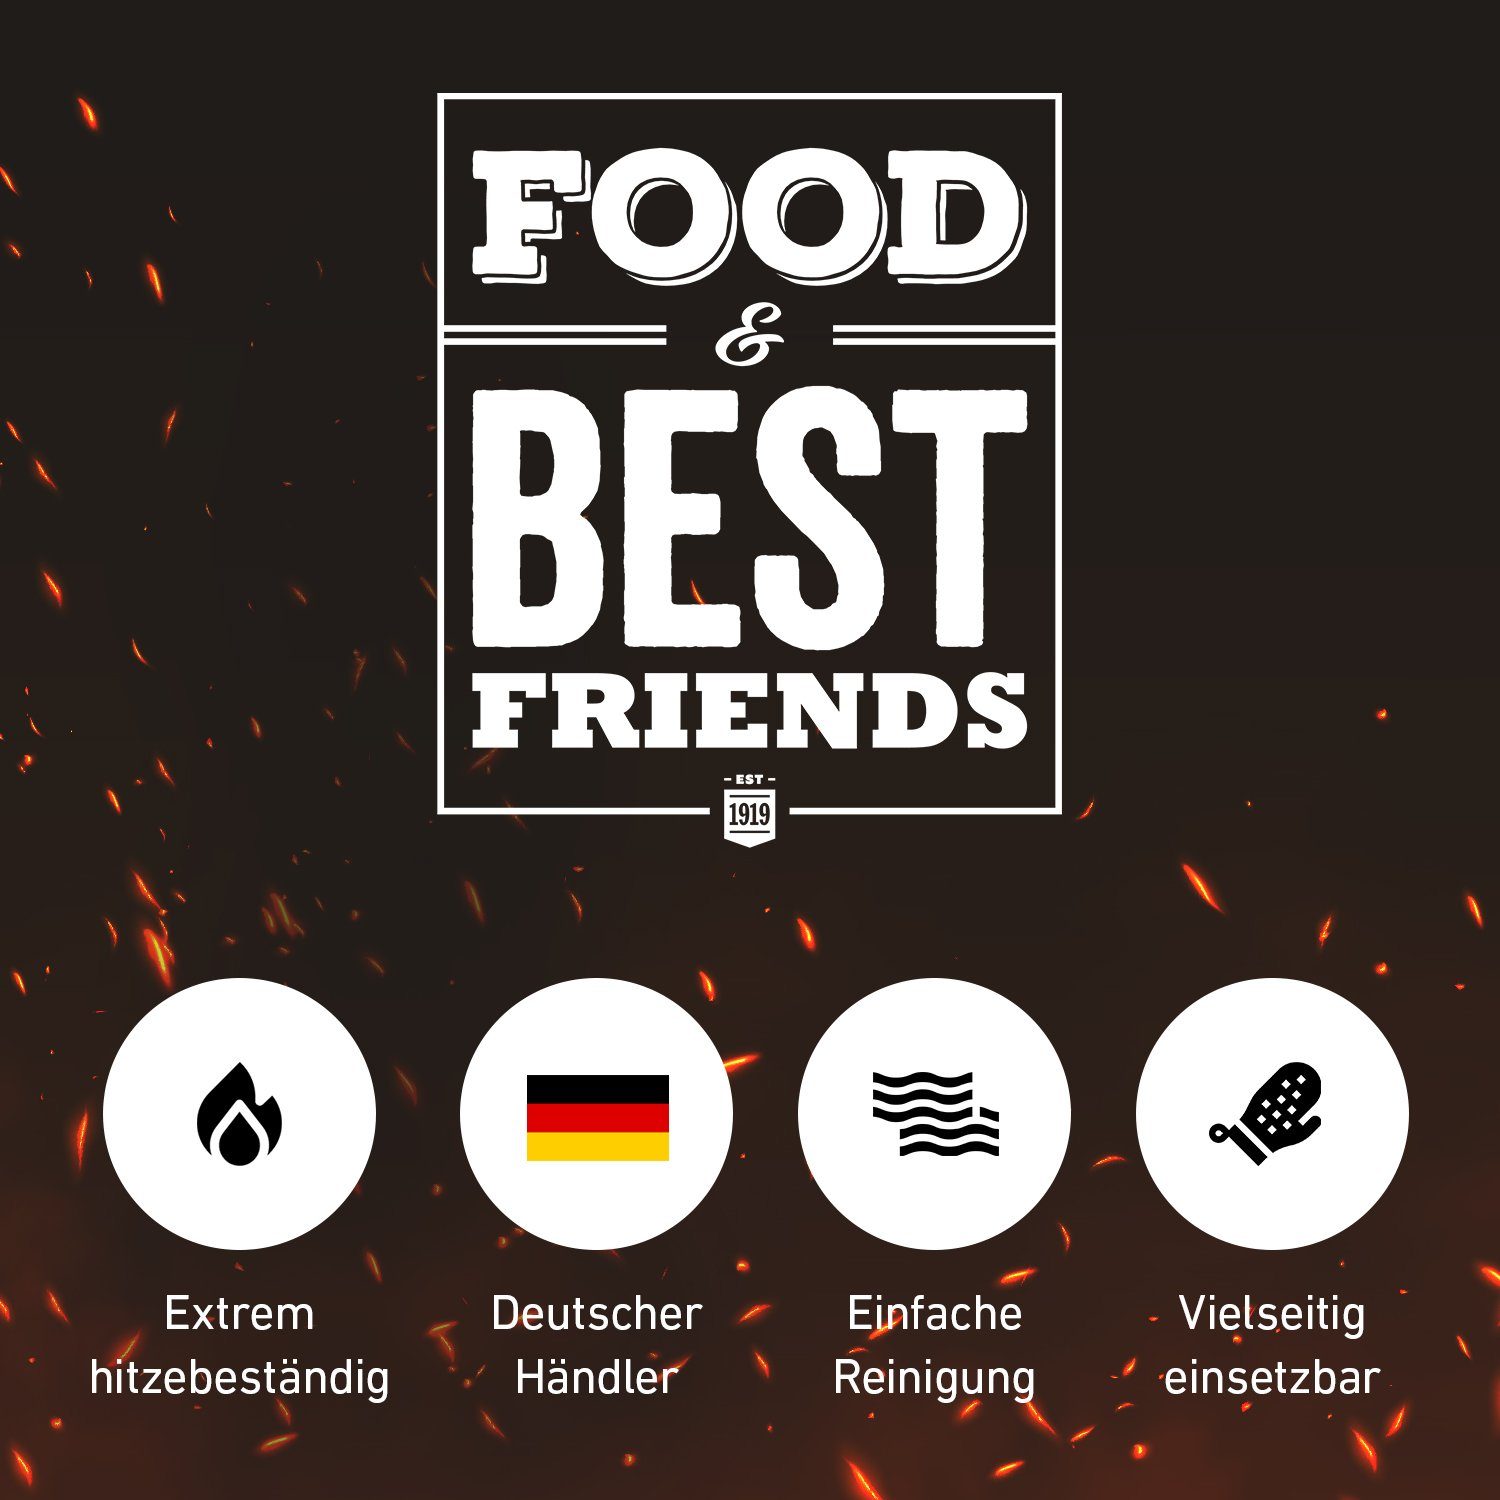 Food Feuerkorb Hitzeschutz Friends Barbecue für Ofenhandschuhe, Grillhandschuhe & Grill Paar), Ofen Best (1-tlg., 1 Aramid,